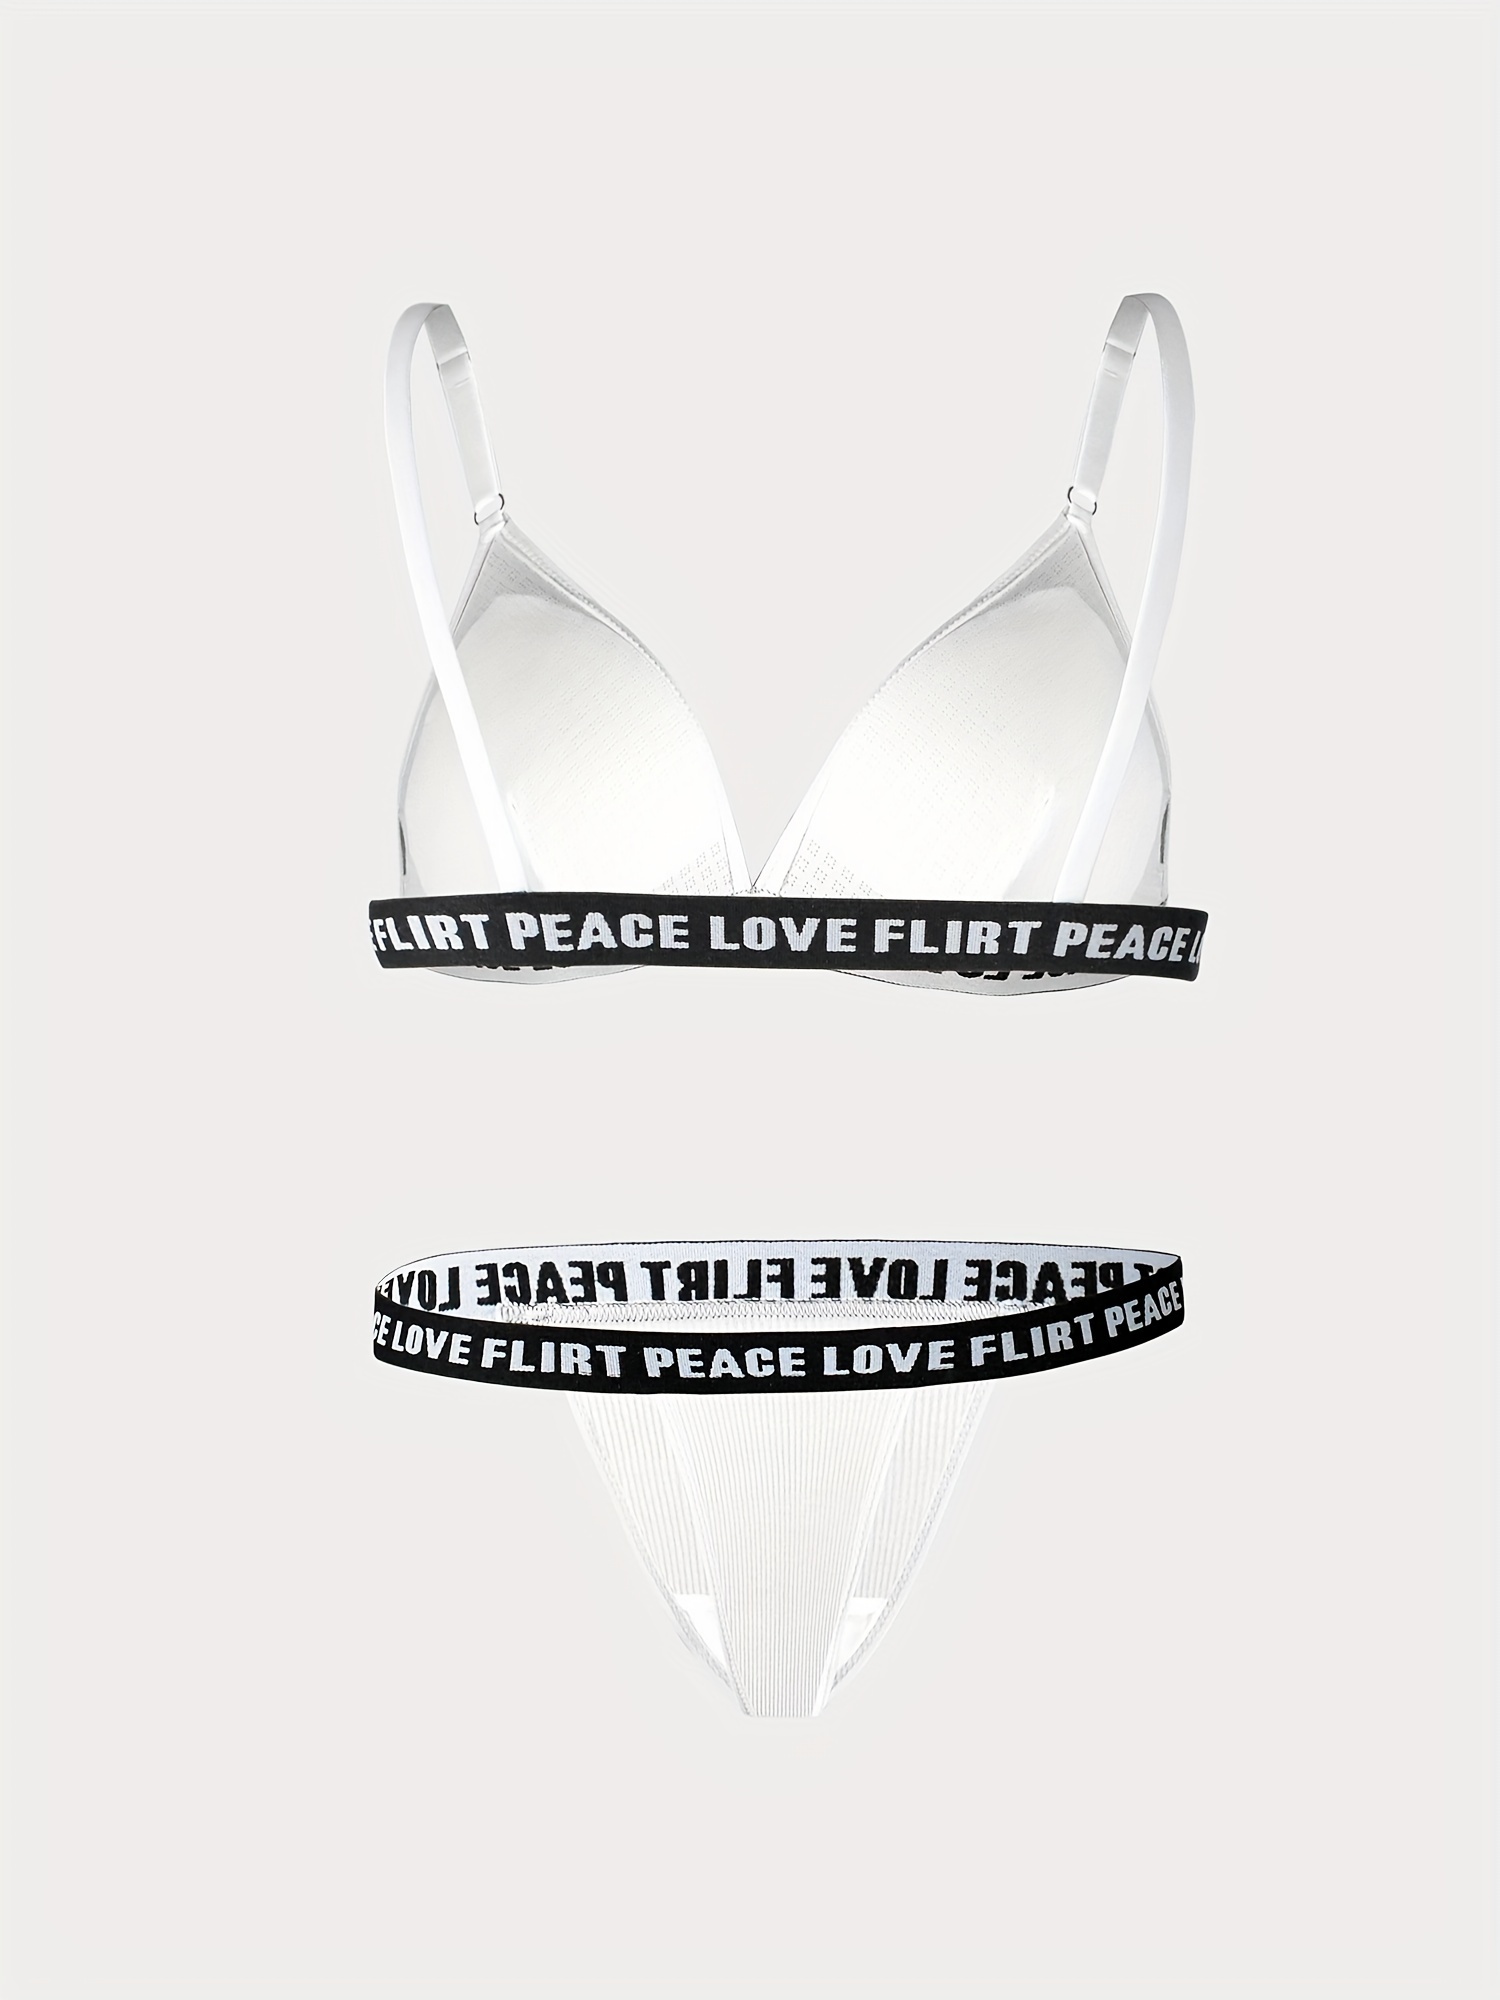 Letter Printed Love Flirt Peace Bra Panty Set, Lingerie, Bra and